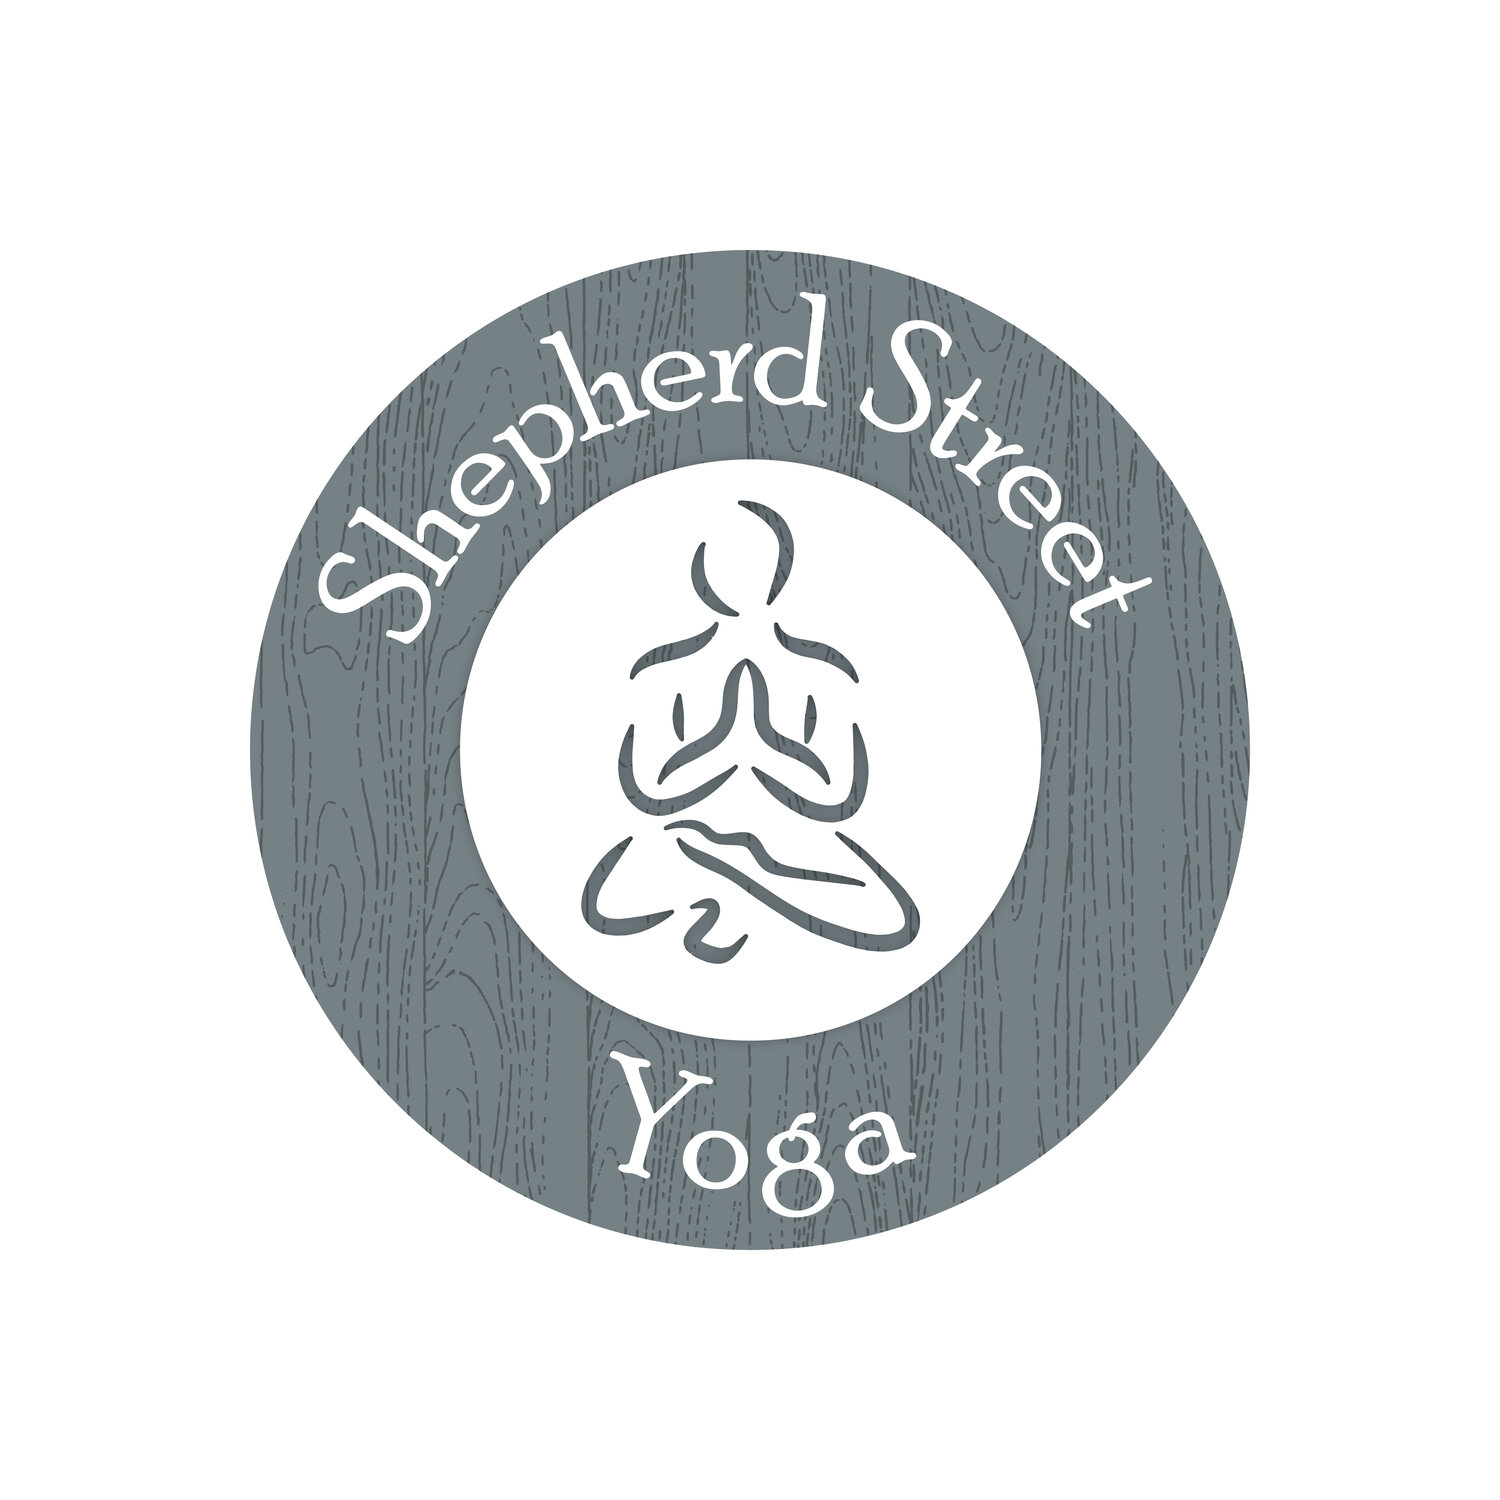 Shepherd Street Yoga